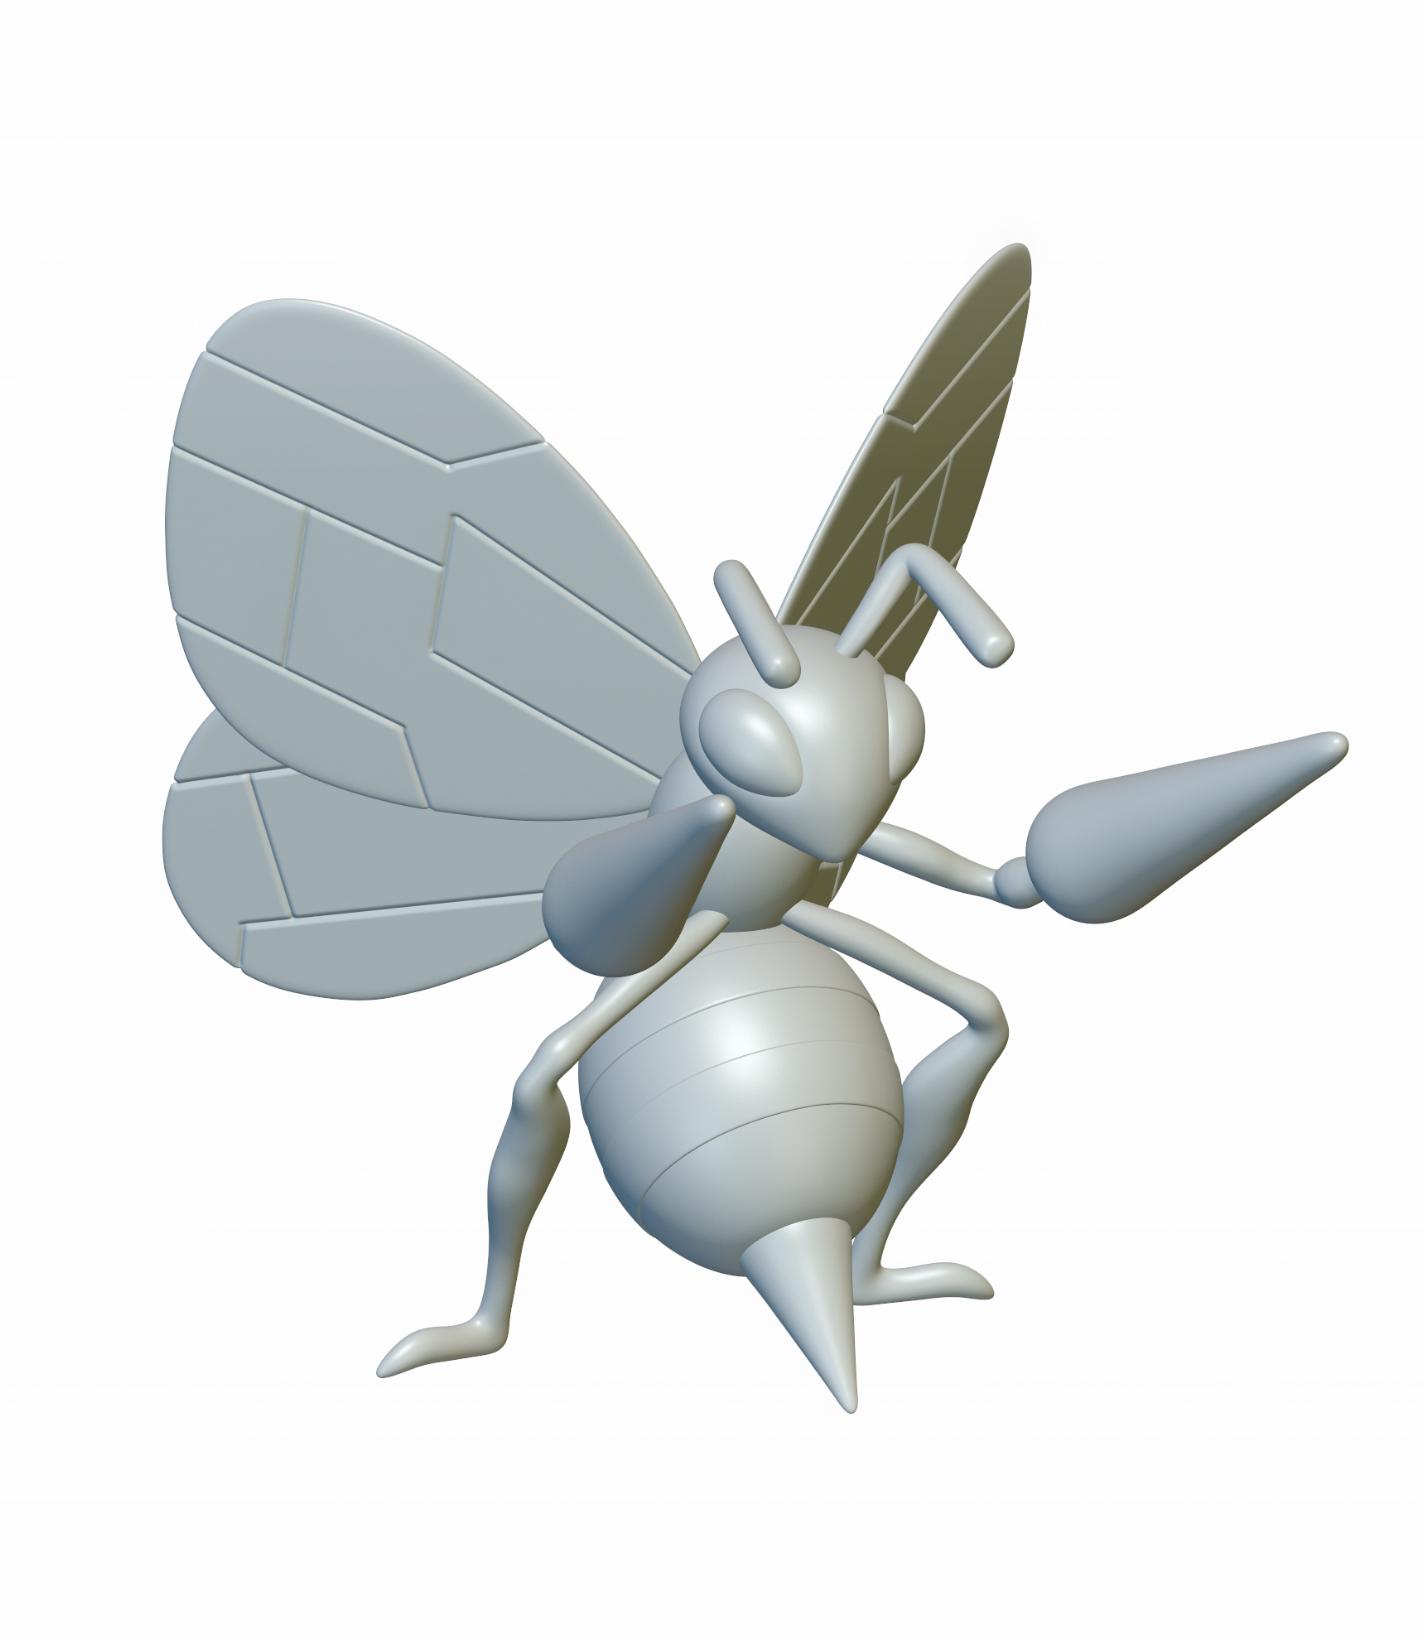 Pokemon Beedrill #15 - Optimized for 3D Printing 3d model